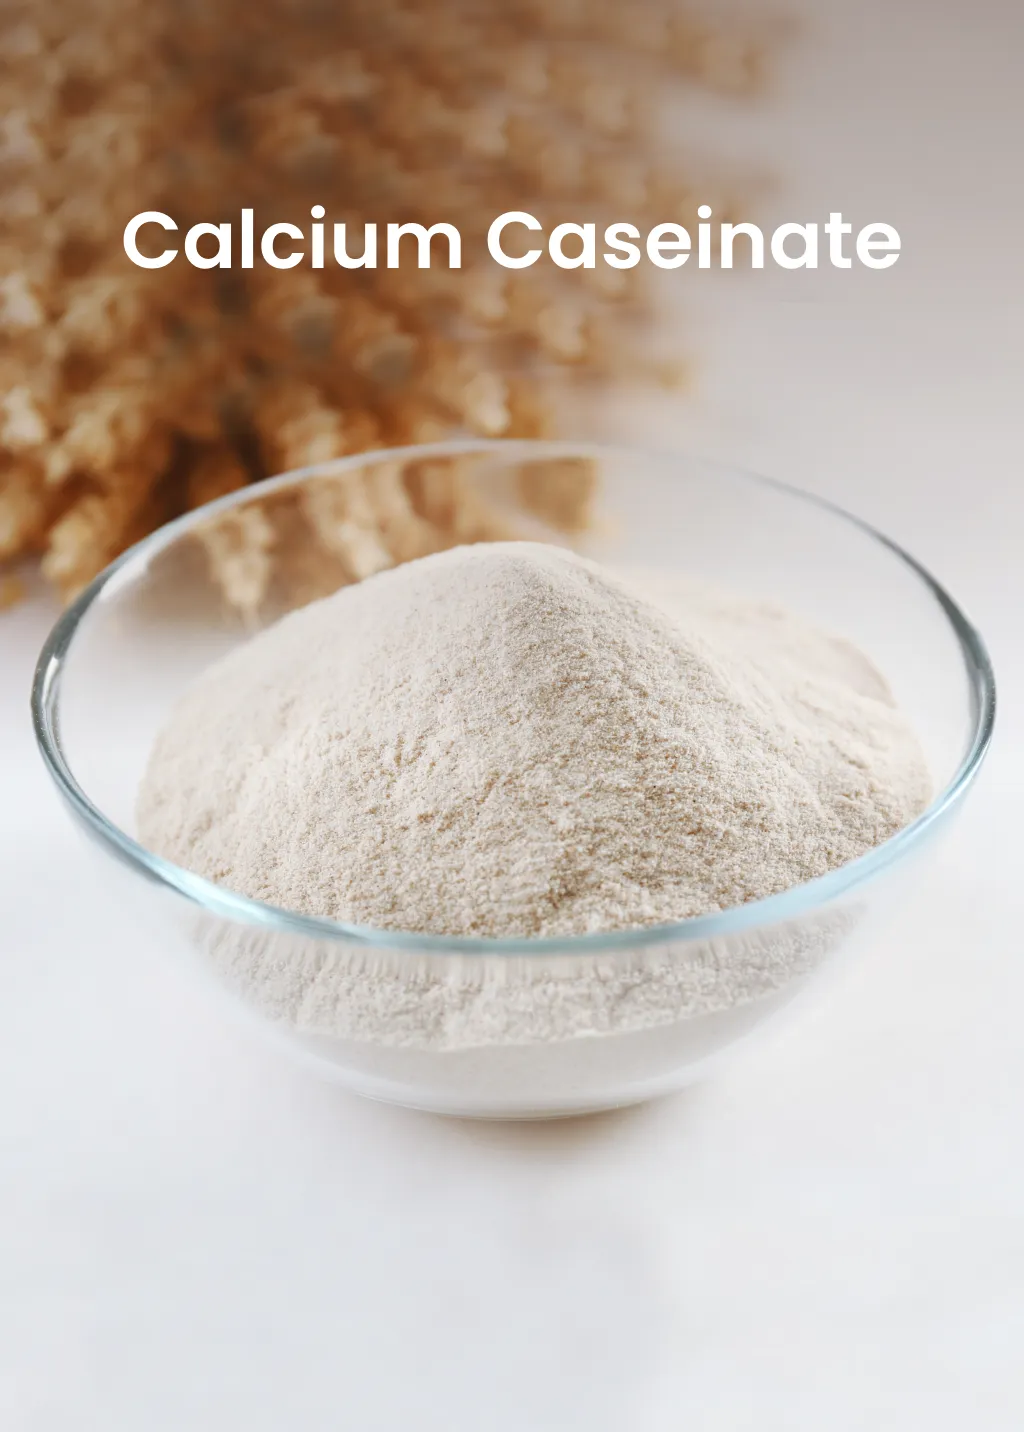 Calcium Caseinate from Milk Powder Asia